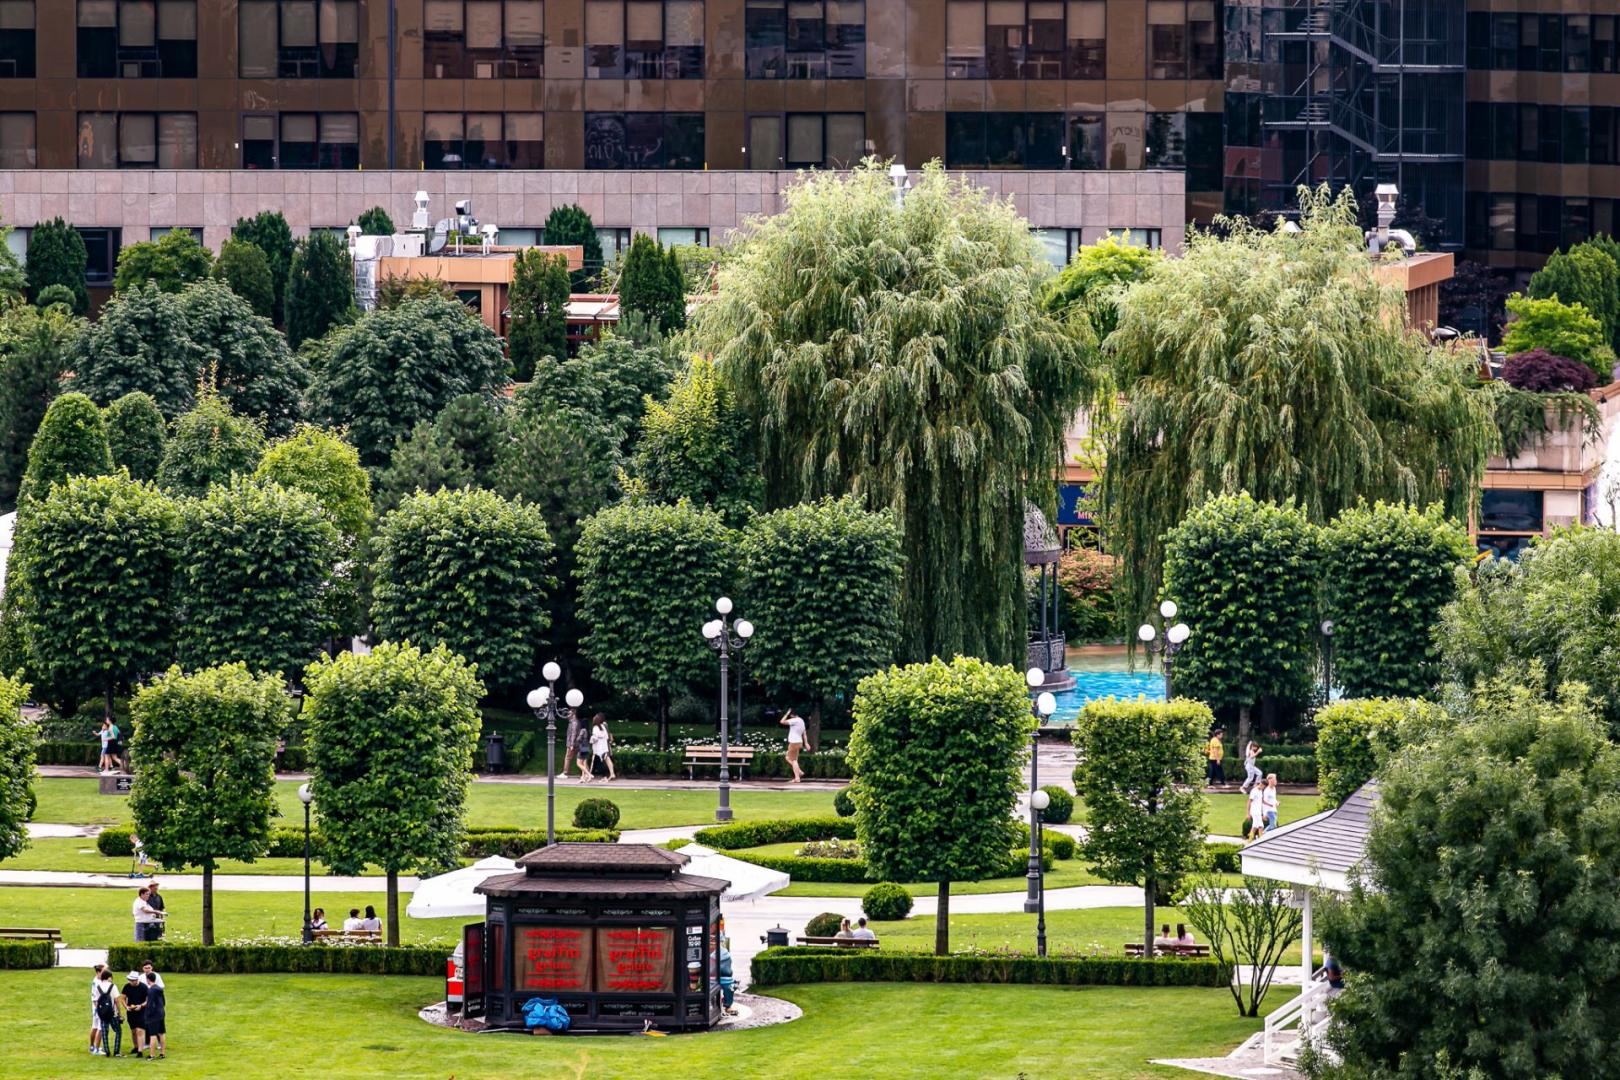 Unde se găsesc și cum arată cele mai frumoase grădini urbane din România